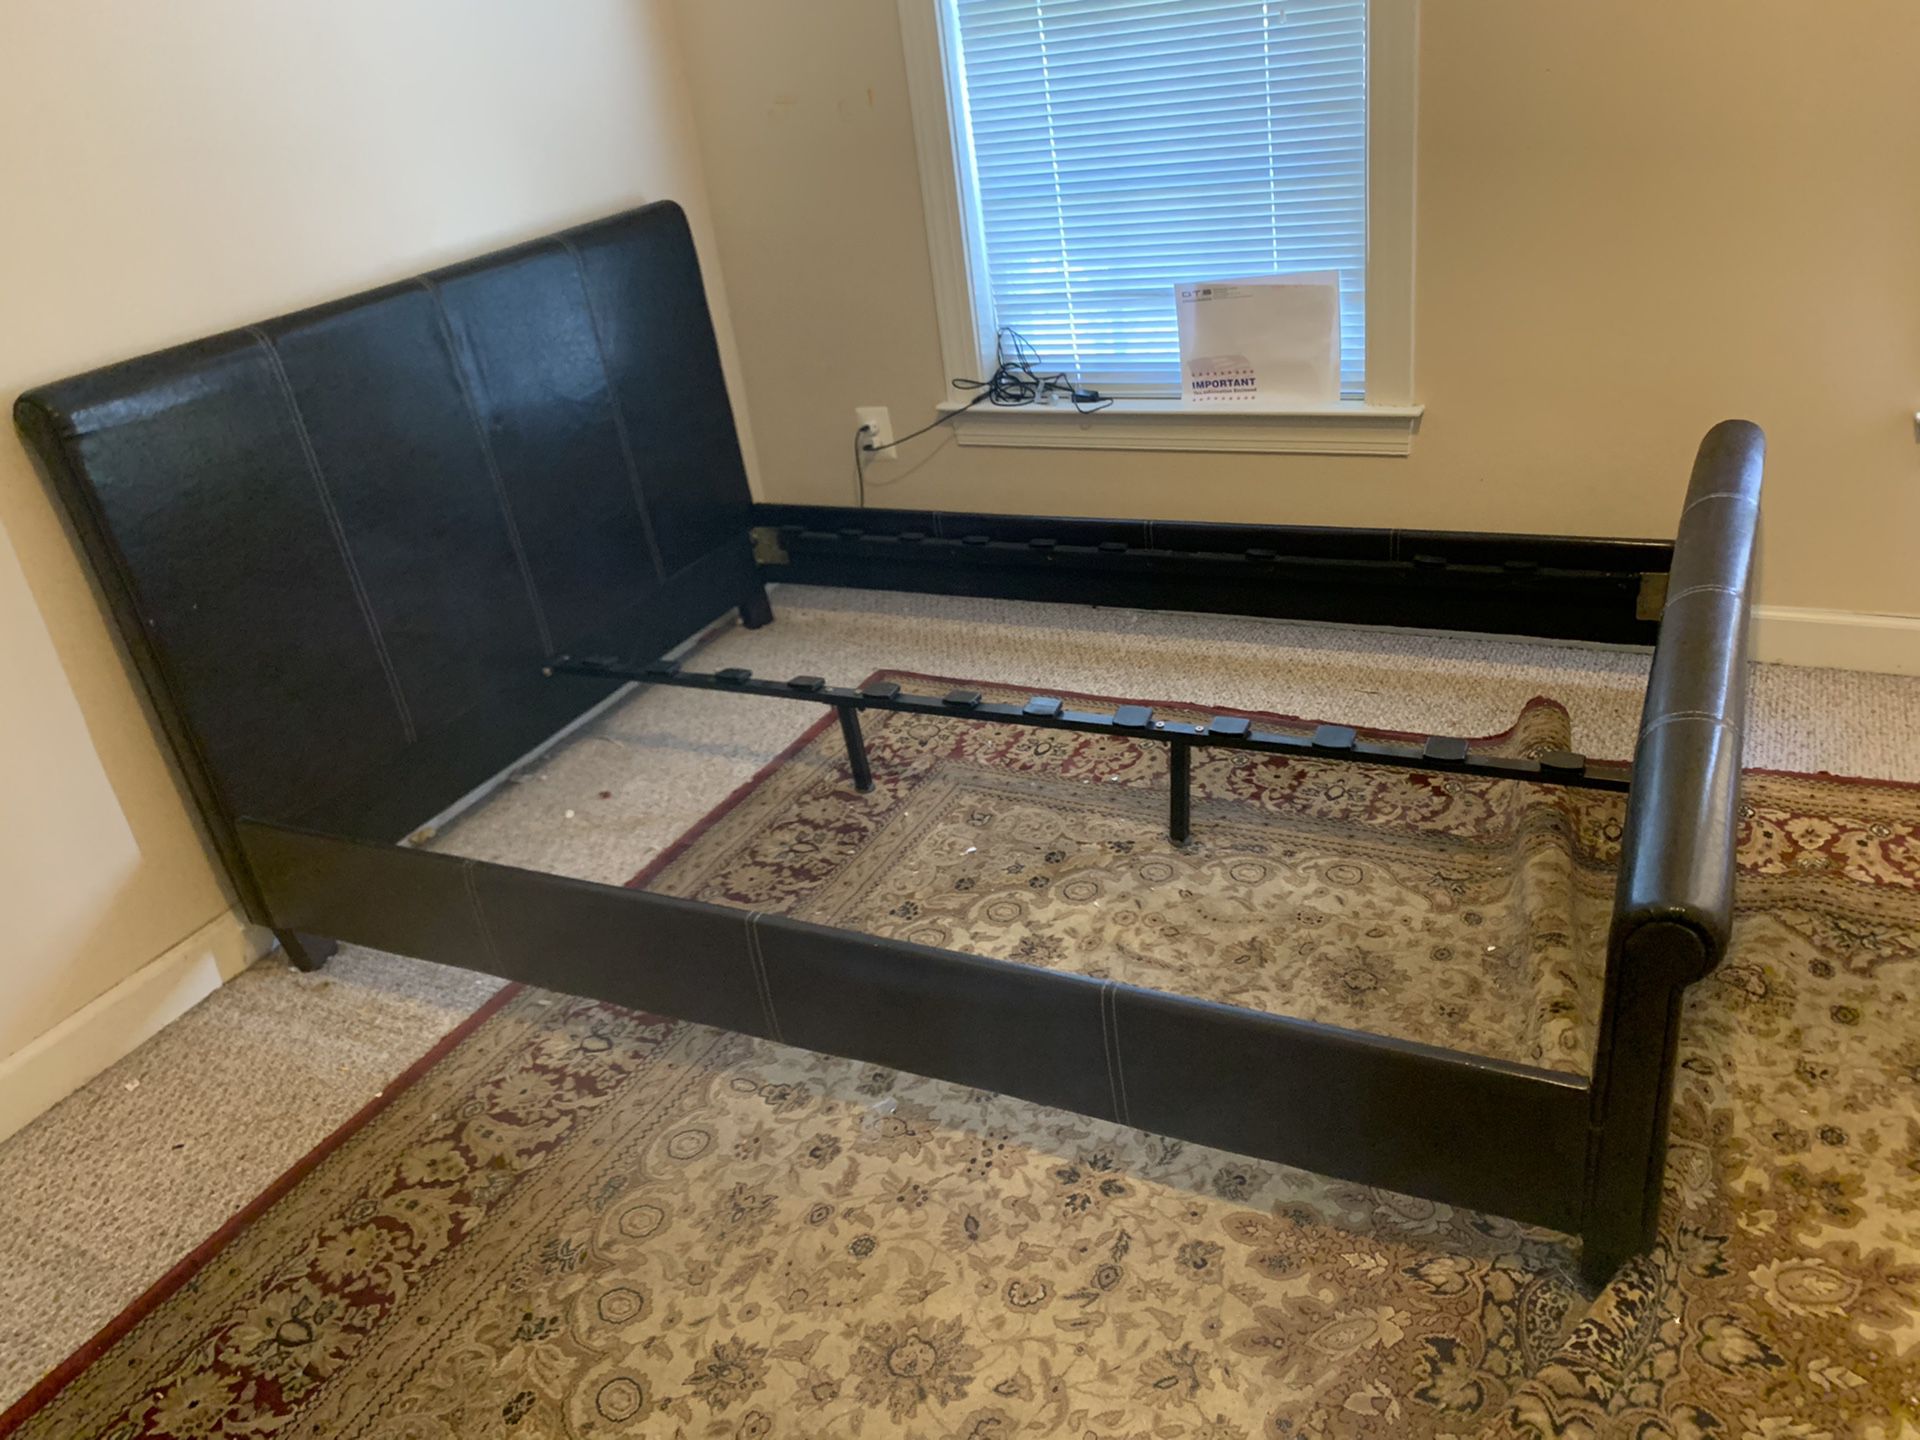 Full size bed frame